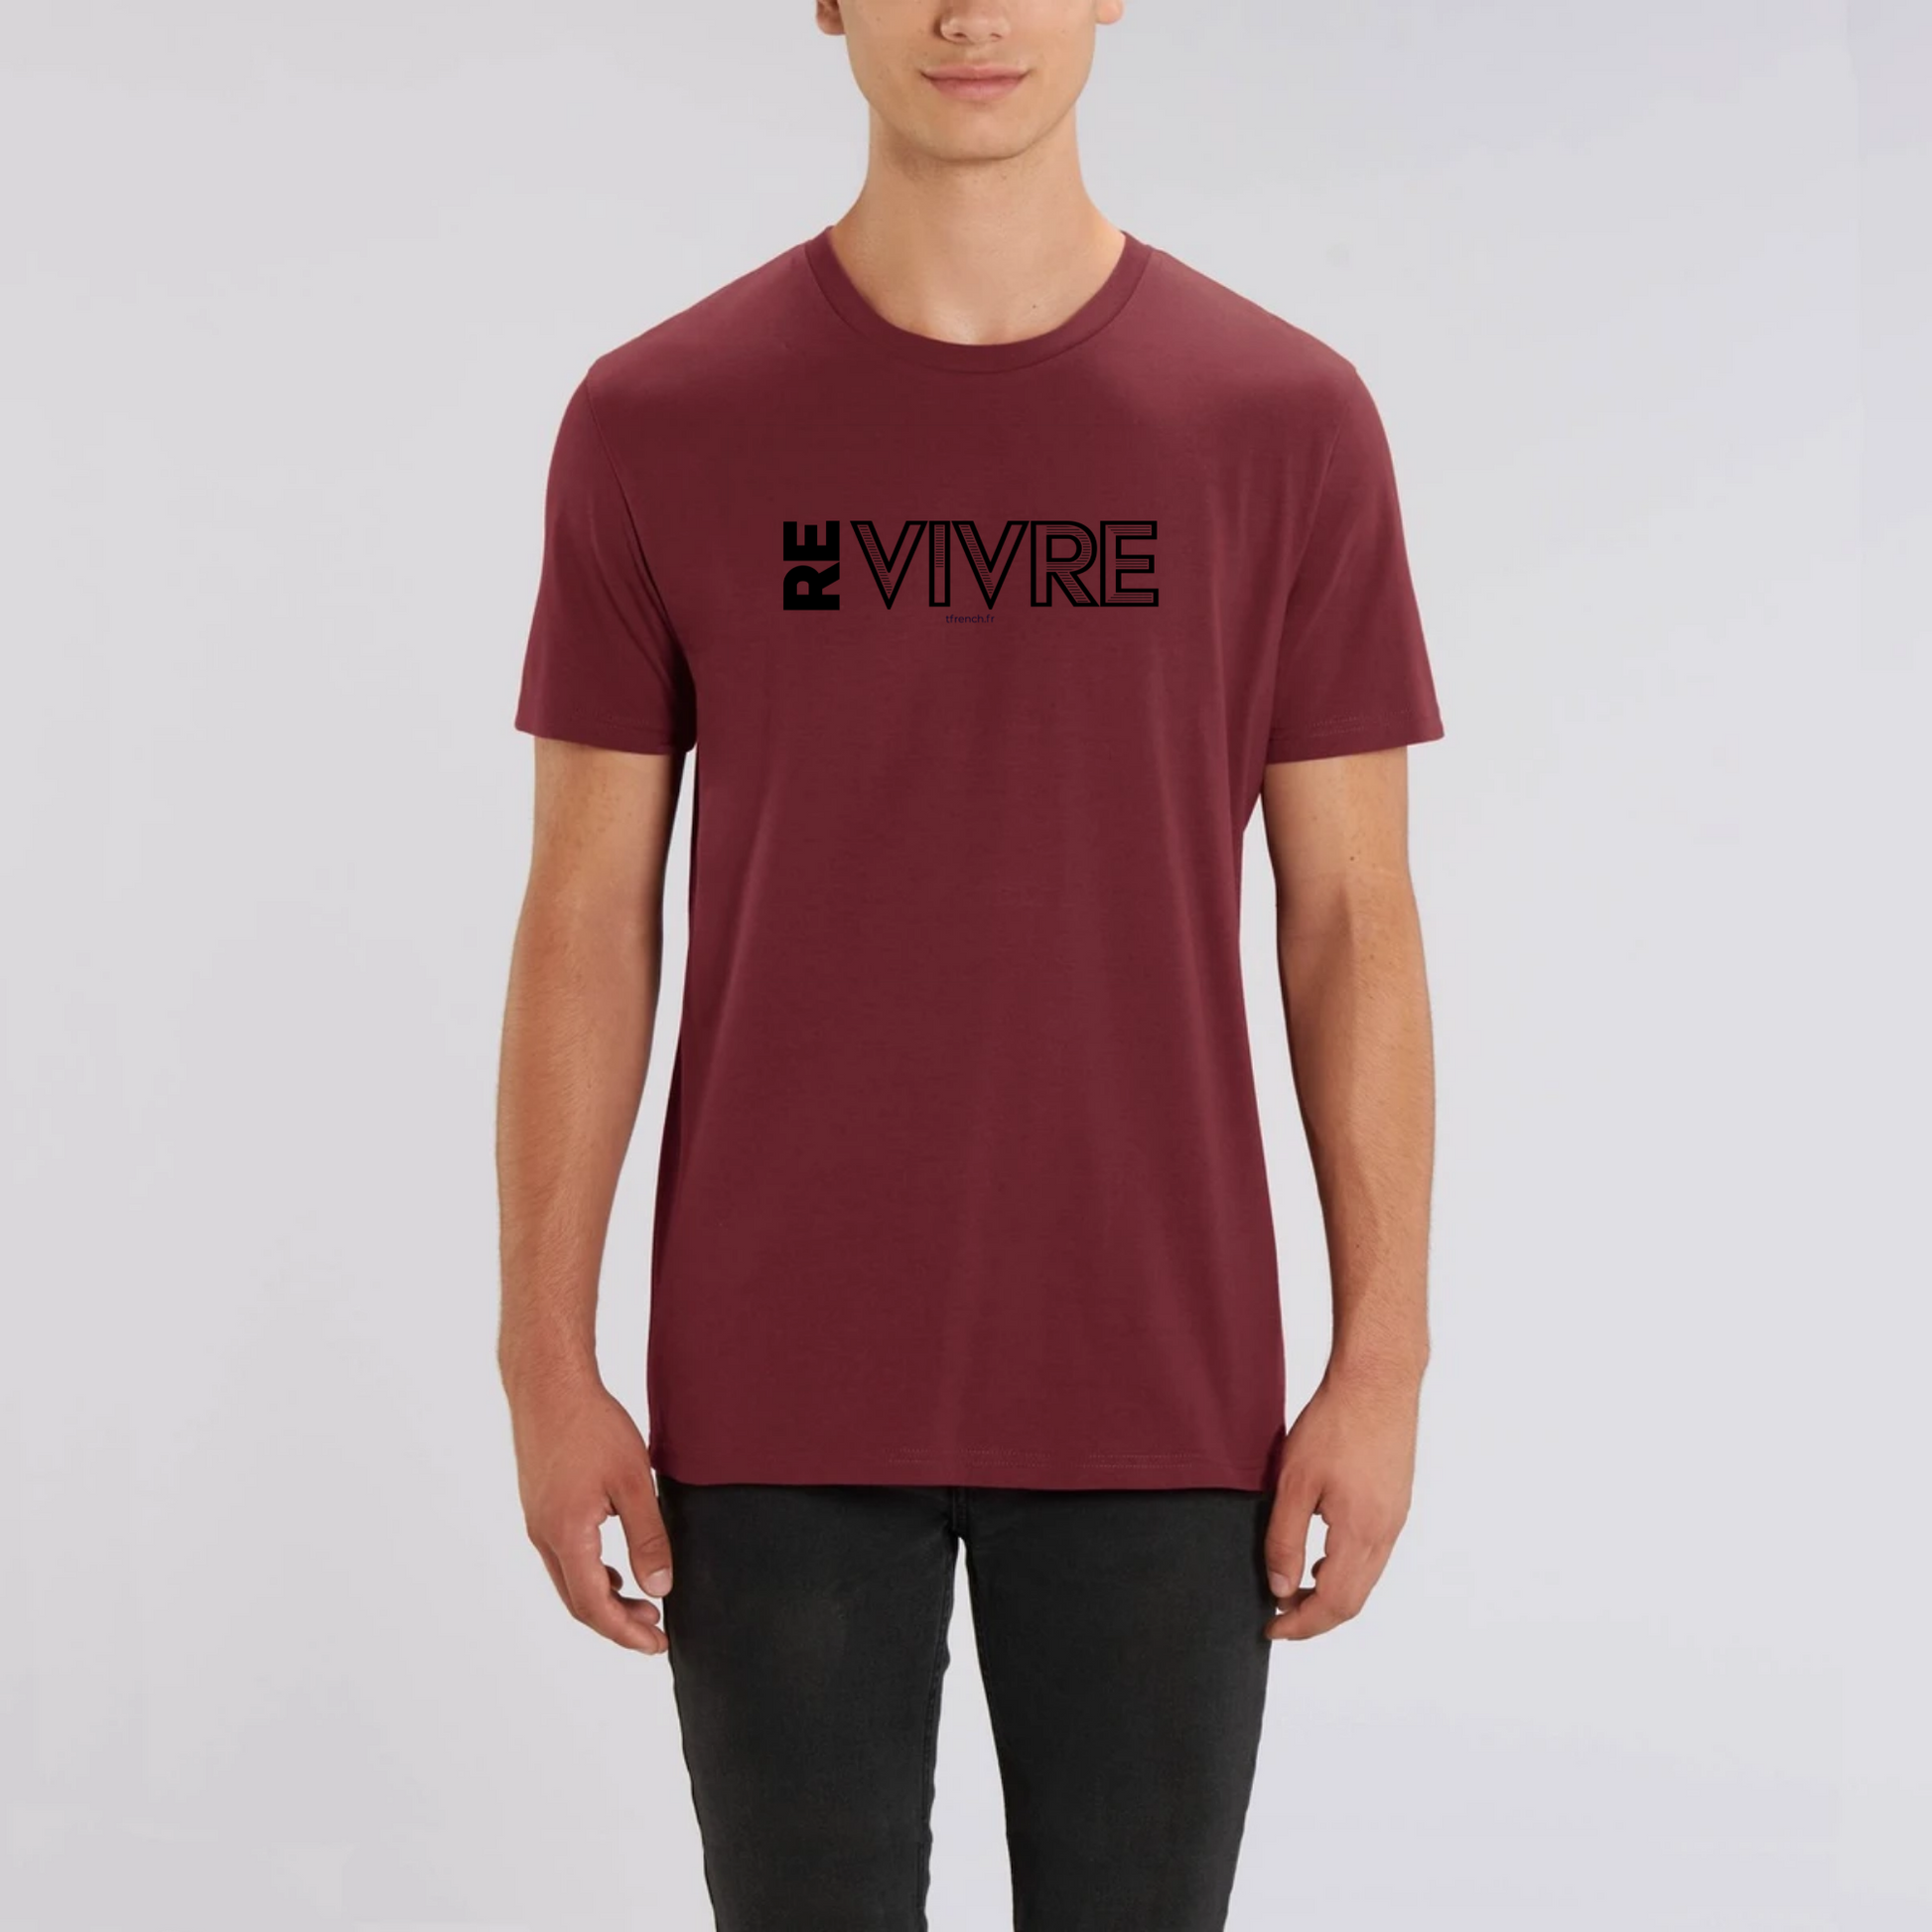 t-shirt Re Vivre en coton bio pour homme de T-French, t-shirt vivre, t-shirt liberté, tee shirt homme bio Re Vivre, t-shirt Bordeaux